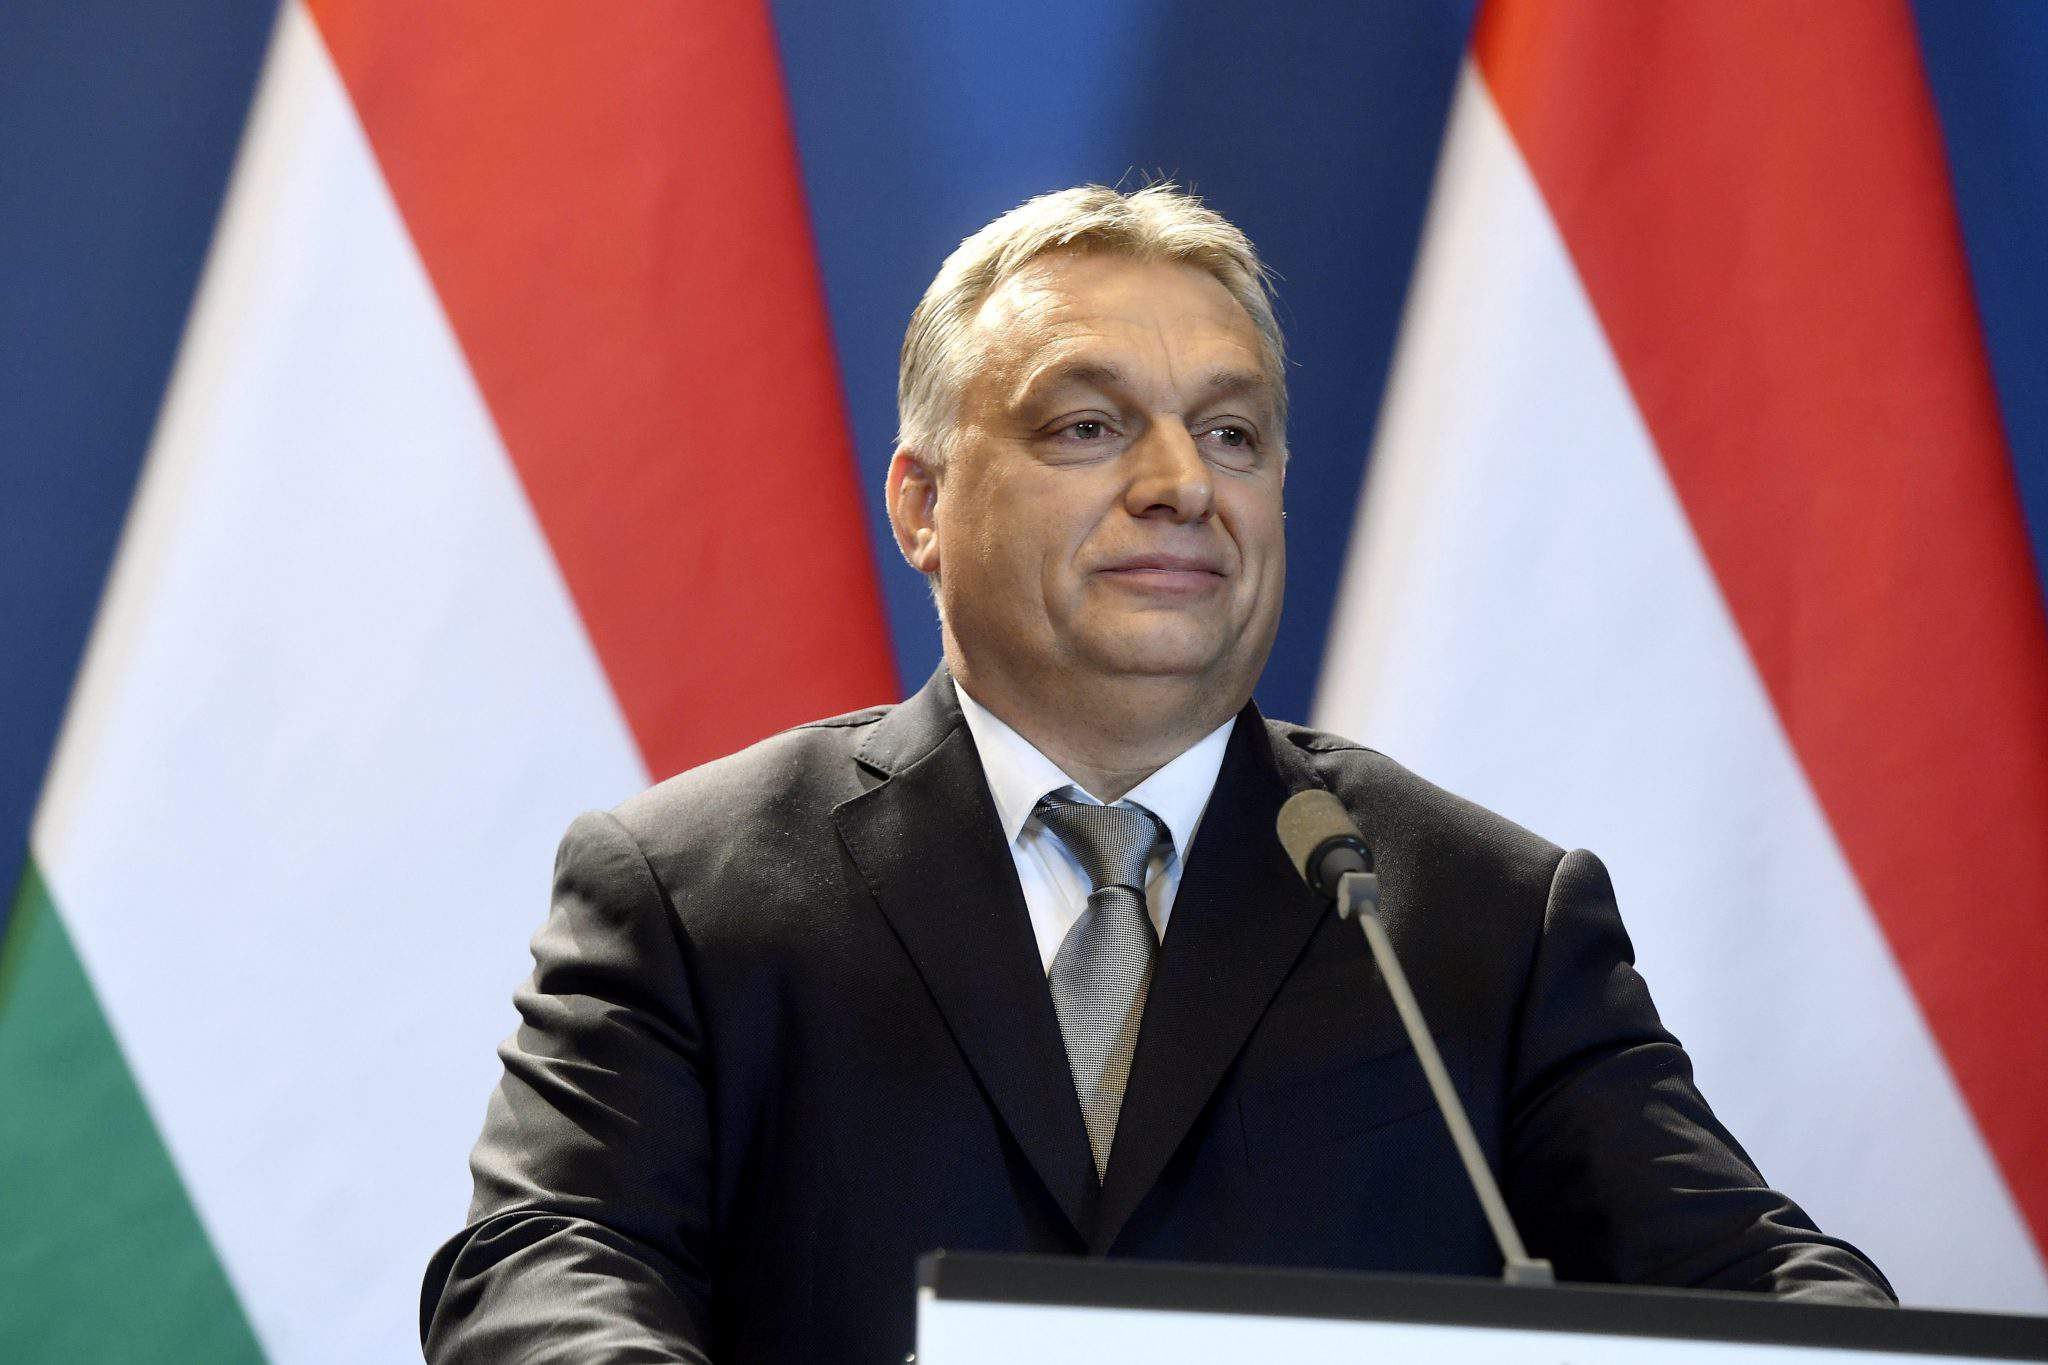 La victoire du Fidesz pourrait menacer la démocratie hongroise